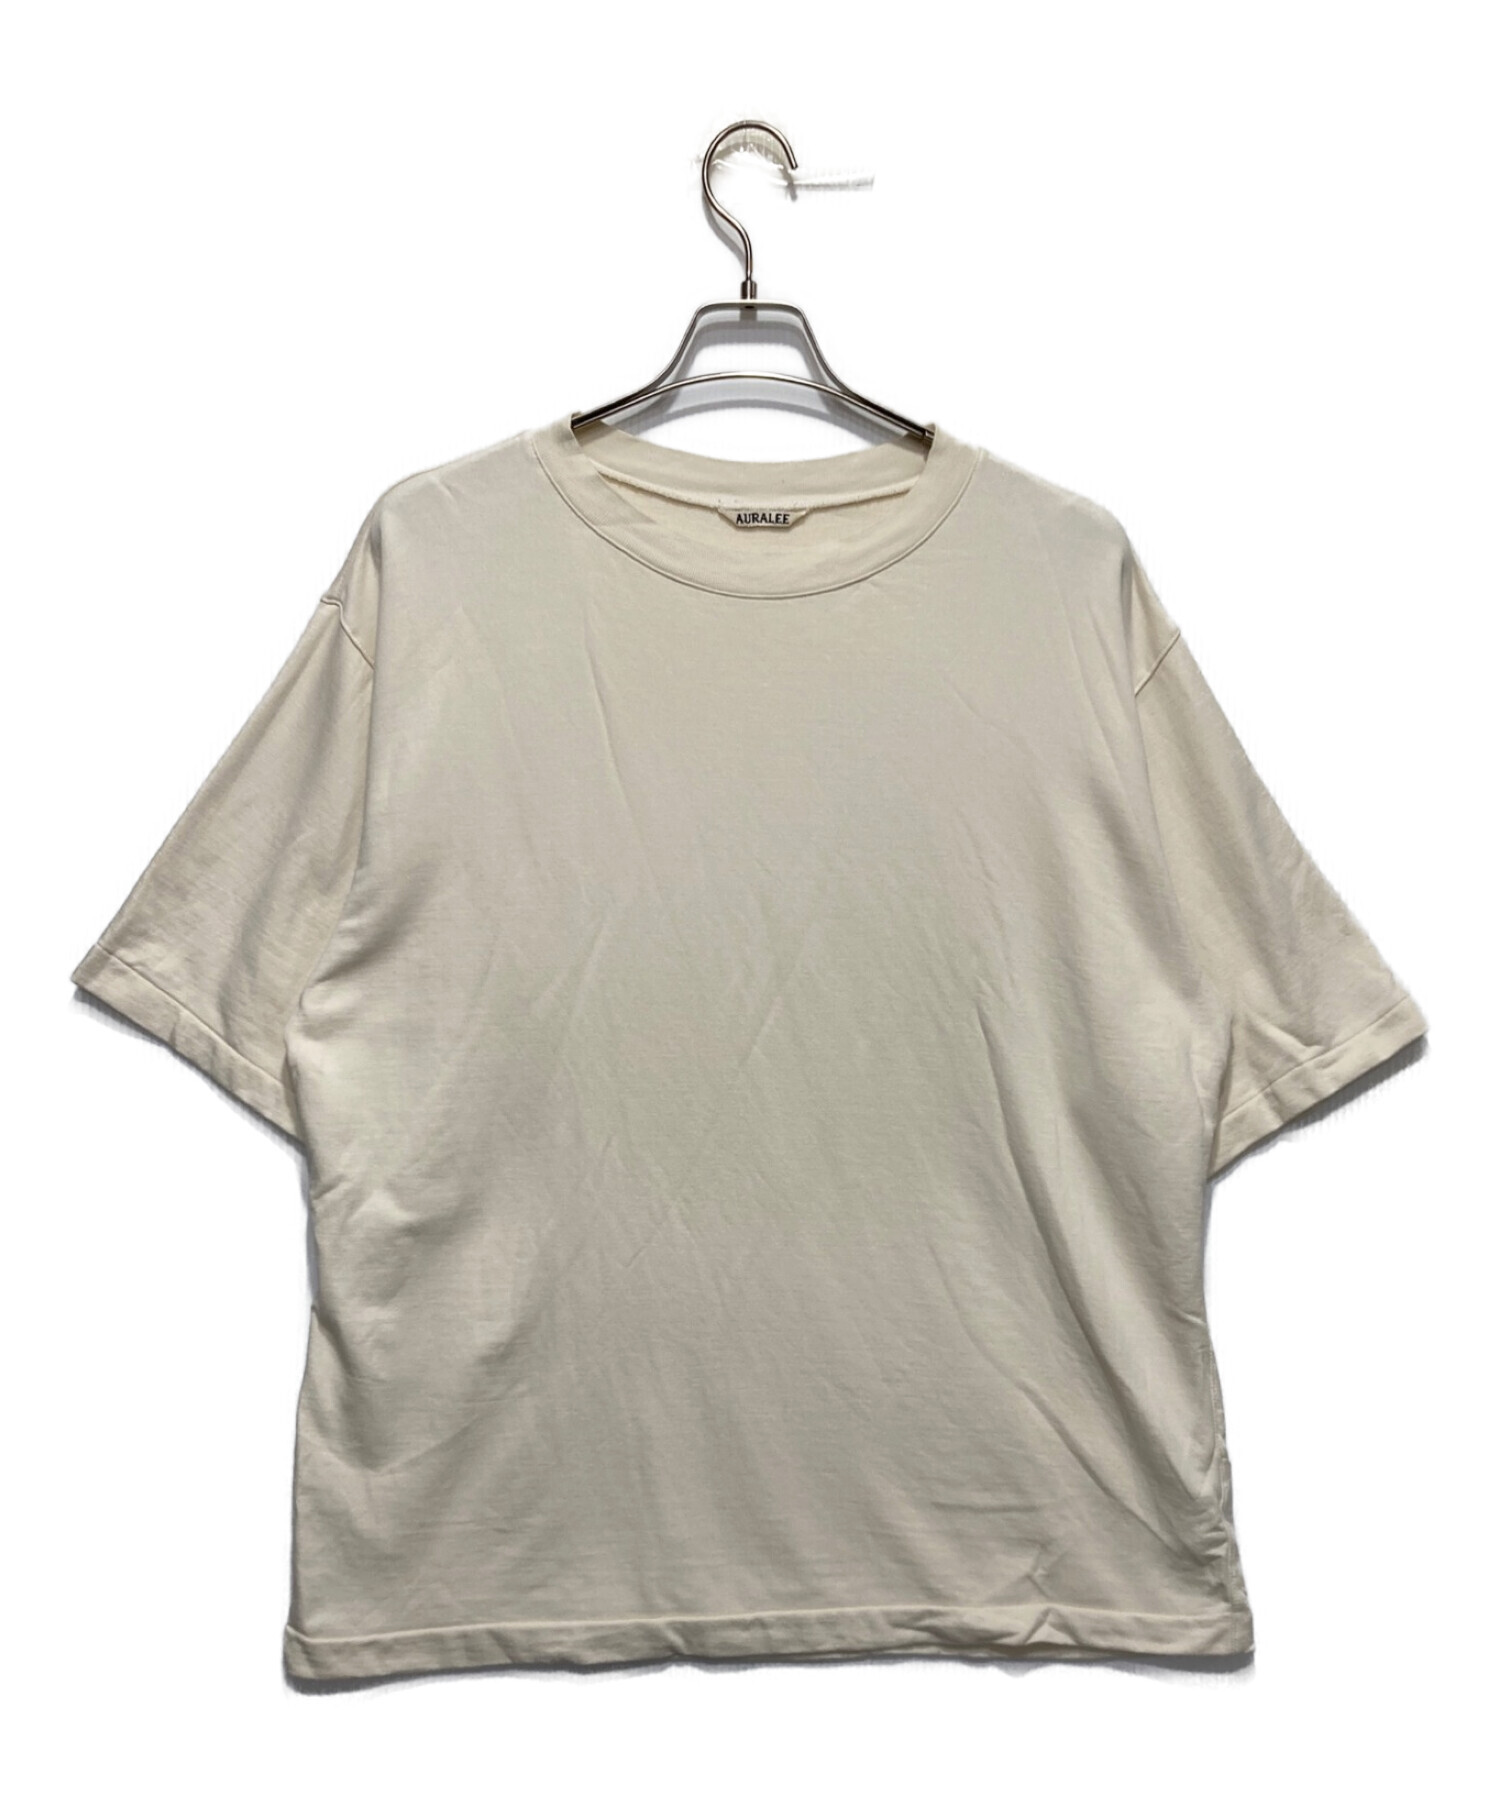 AURALEE (オーラリー) スーパー ハイゲージ ナップト スウェット Tシャツ アイボリー サイズ:5